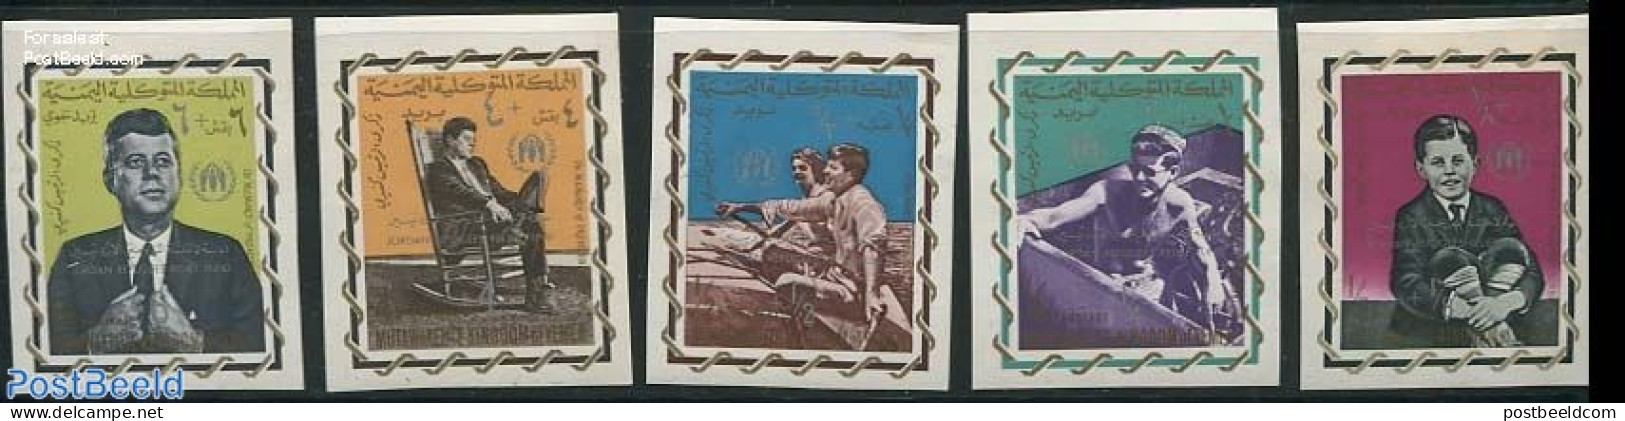 Yemen, Kingdom 1967 Refugees Overprints 5v, Imperforated, Mint NH, History - Transport - American Presidents - Refugee.. - Refugiados